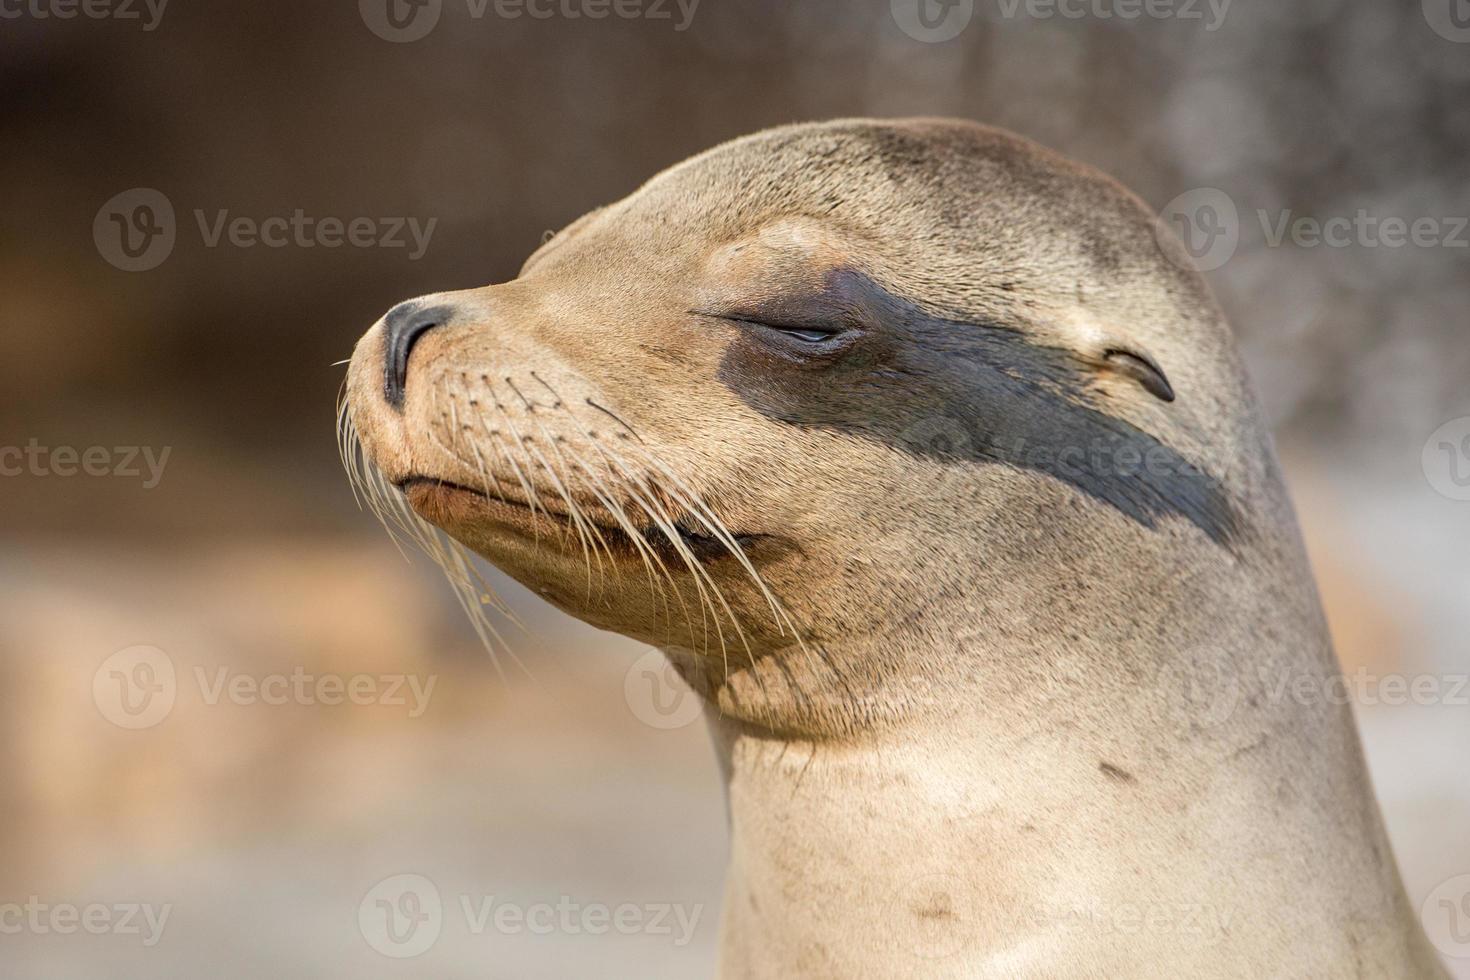 californian sea lion close up portrait photo